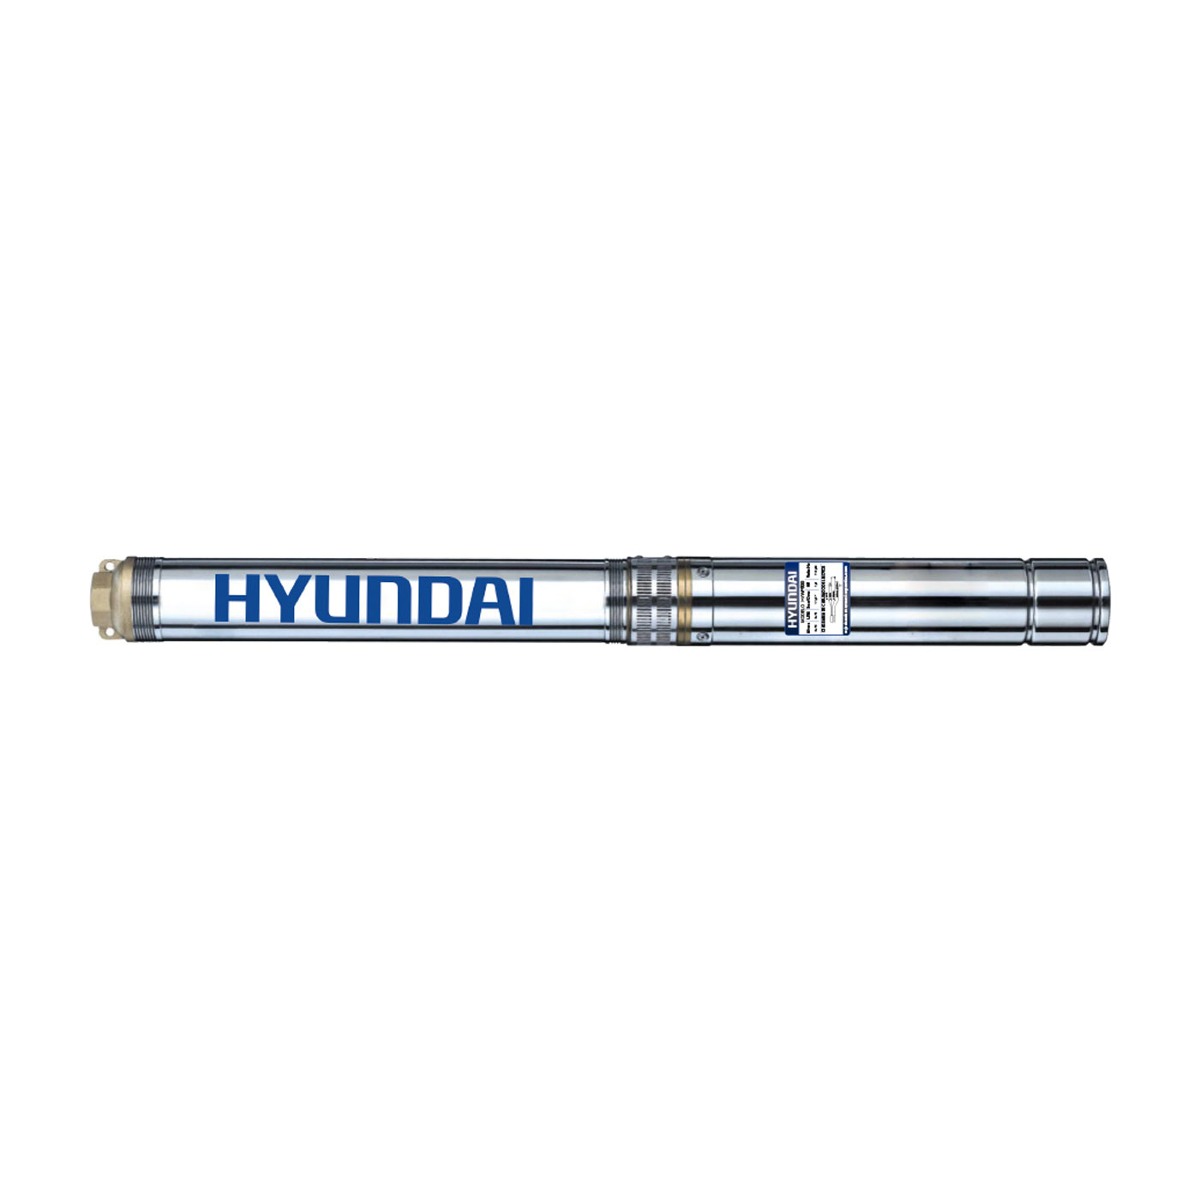 Bomba Sumergible Hyundai 1 Hp Eléctrica Pozo De 4 Hywp1000 - DAKXIM - Mexico